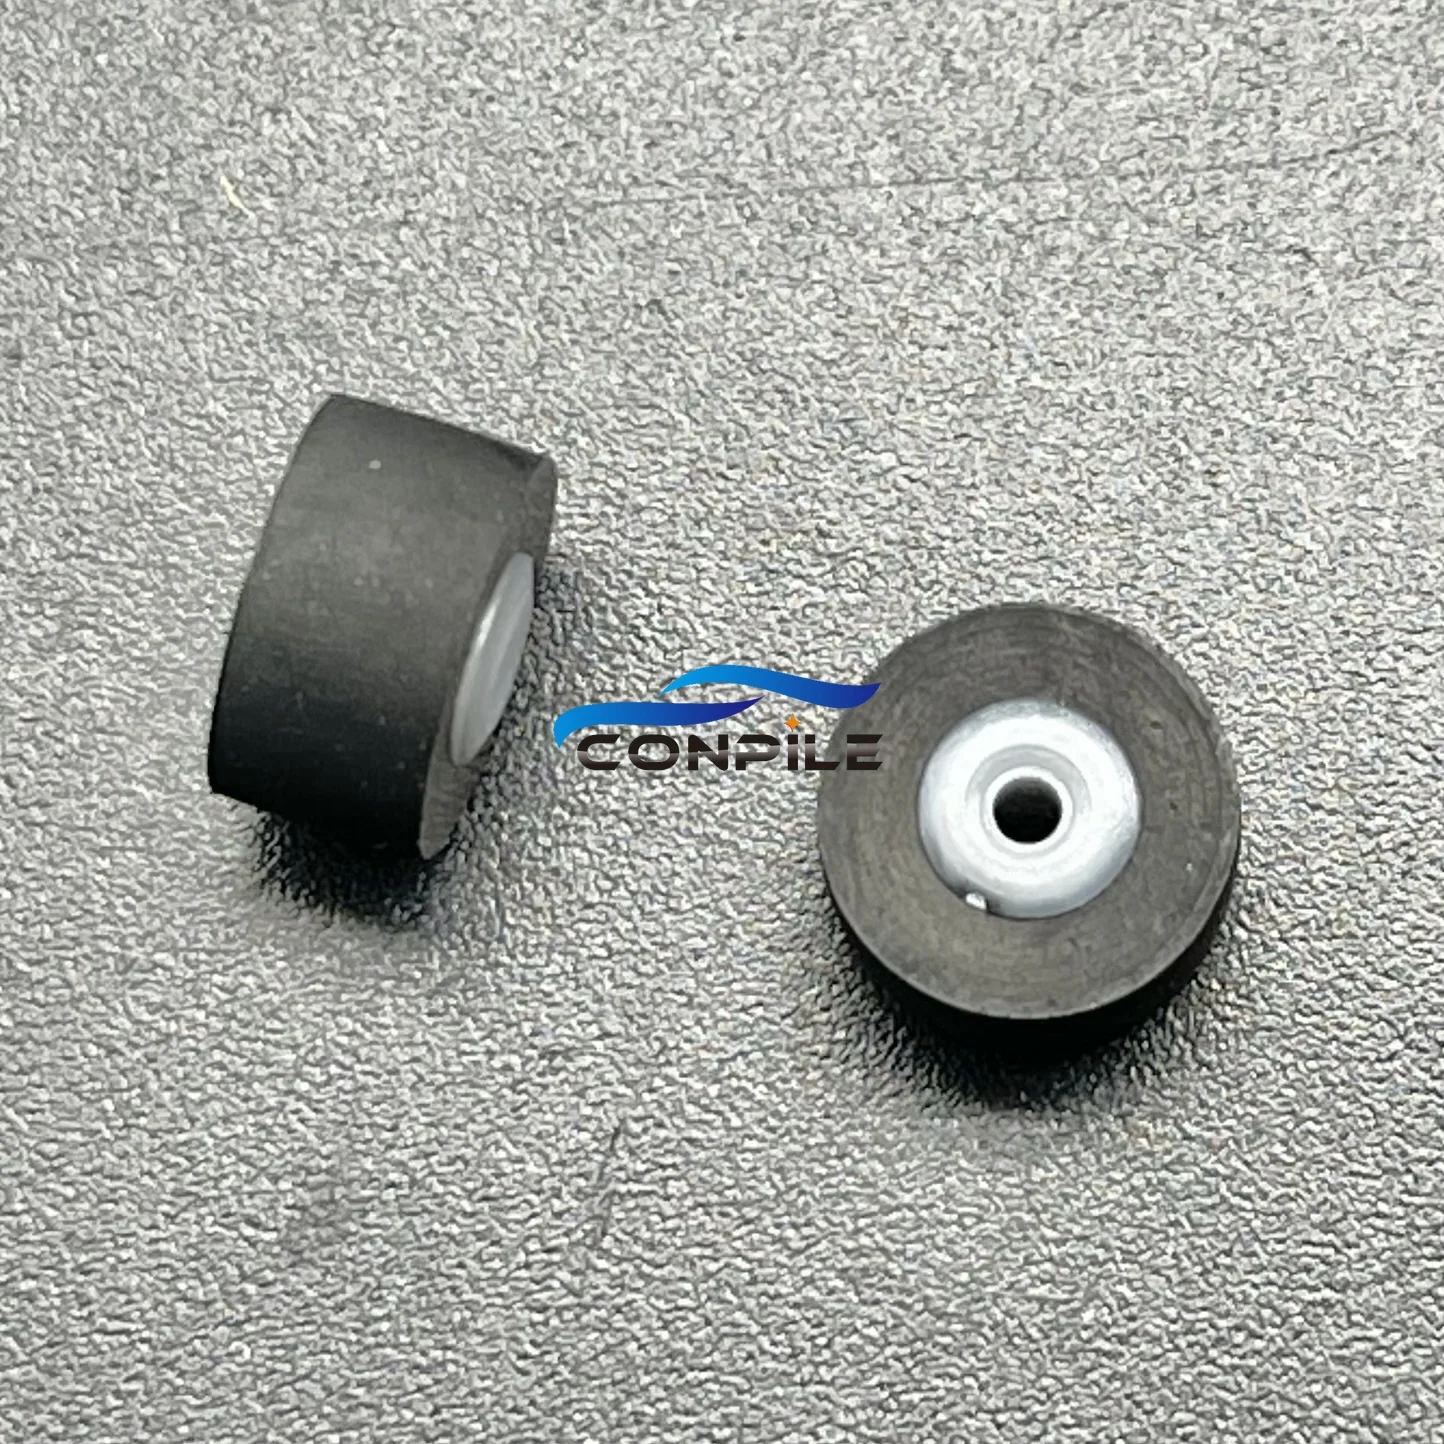 прижимной ролик 9,5x6x1,5 мм для кассетной деки магнитофона для стереоплеера SONY Panasonic